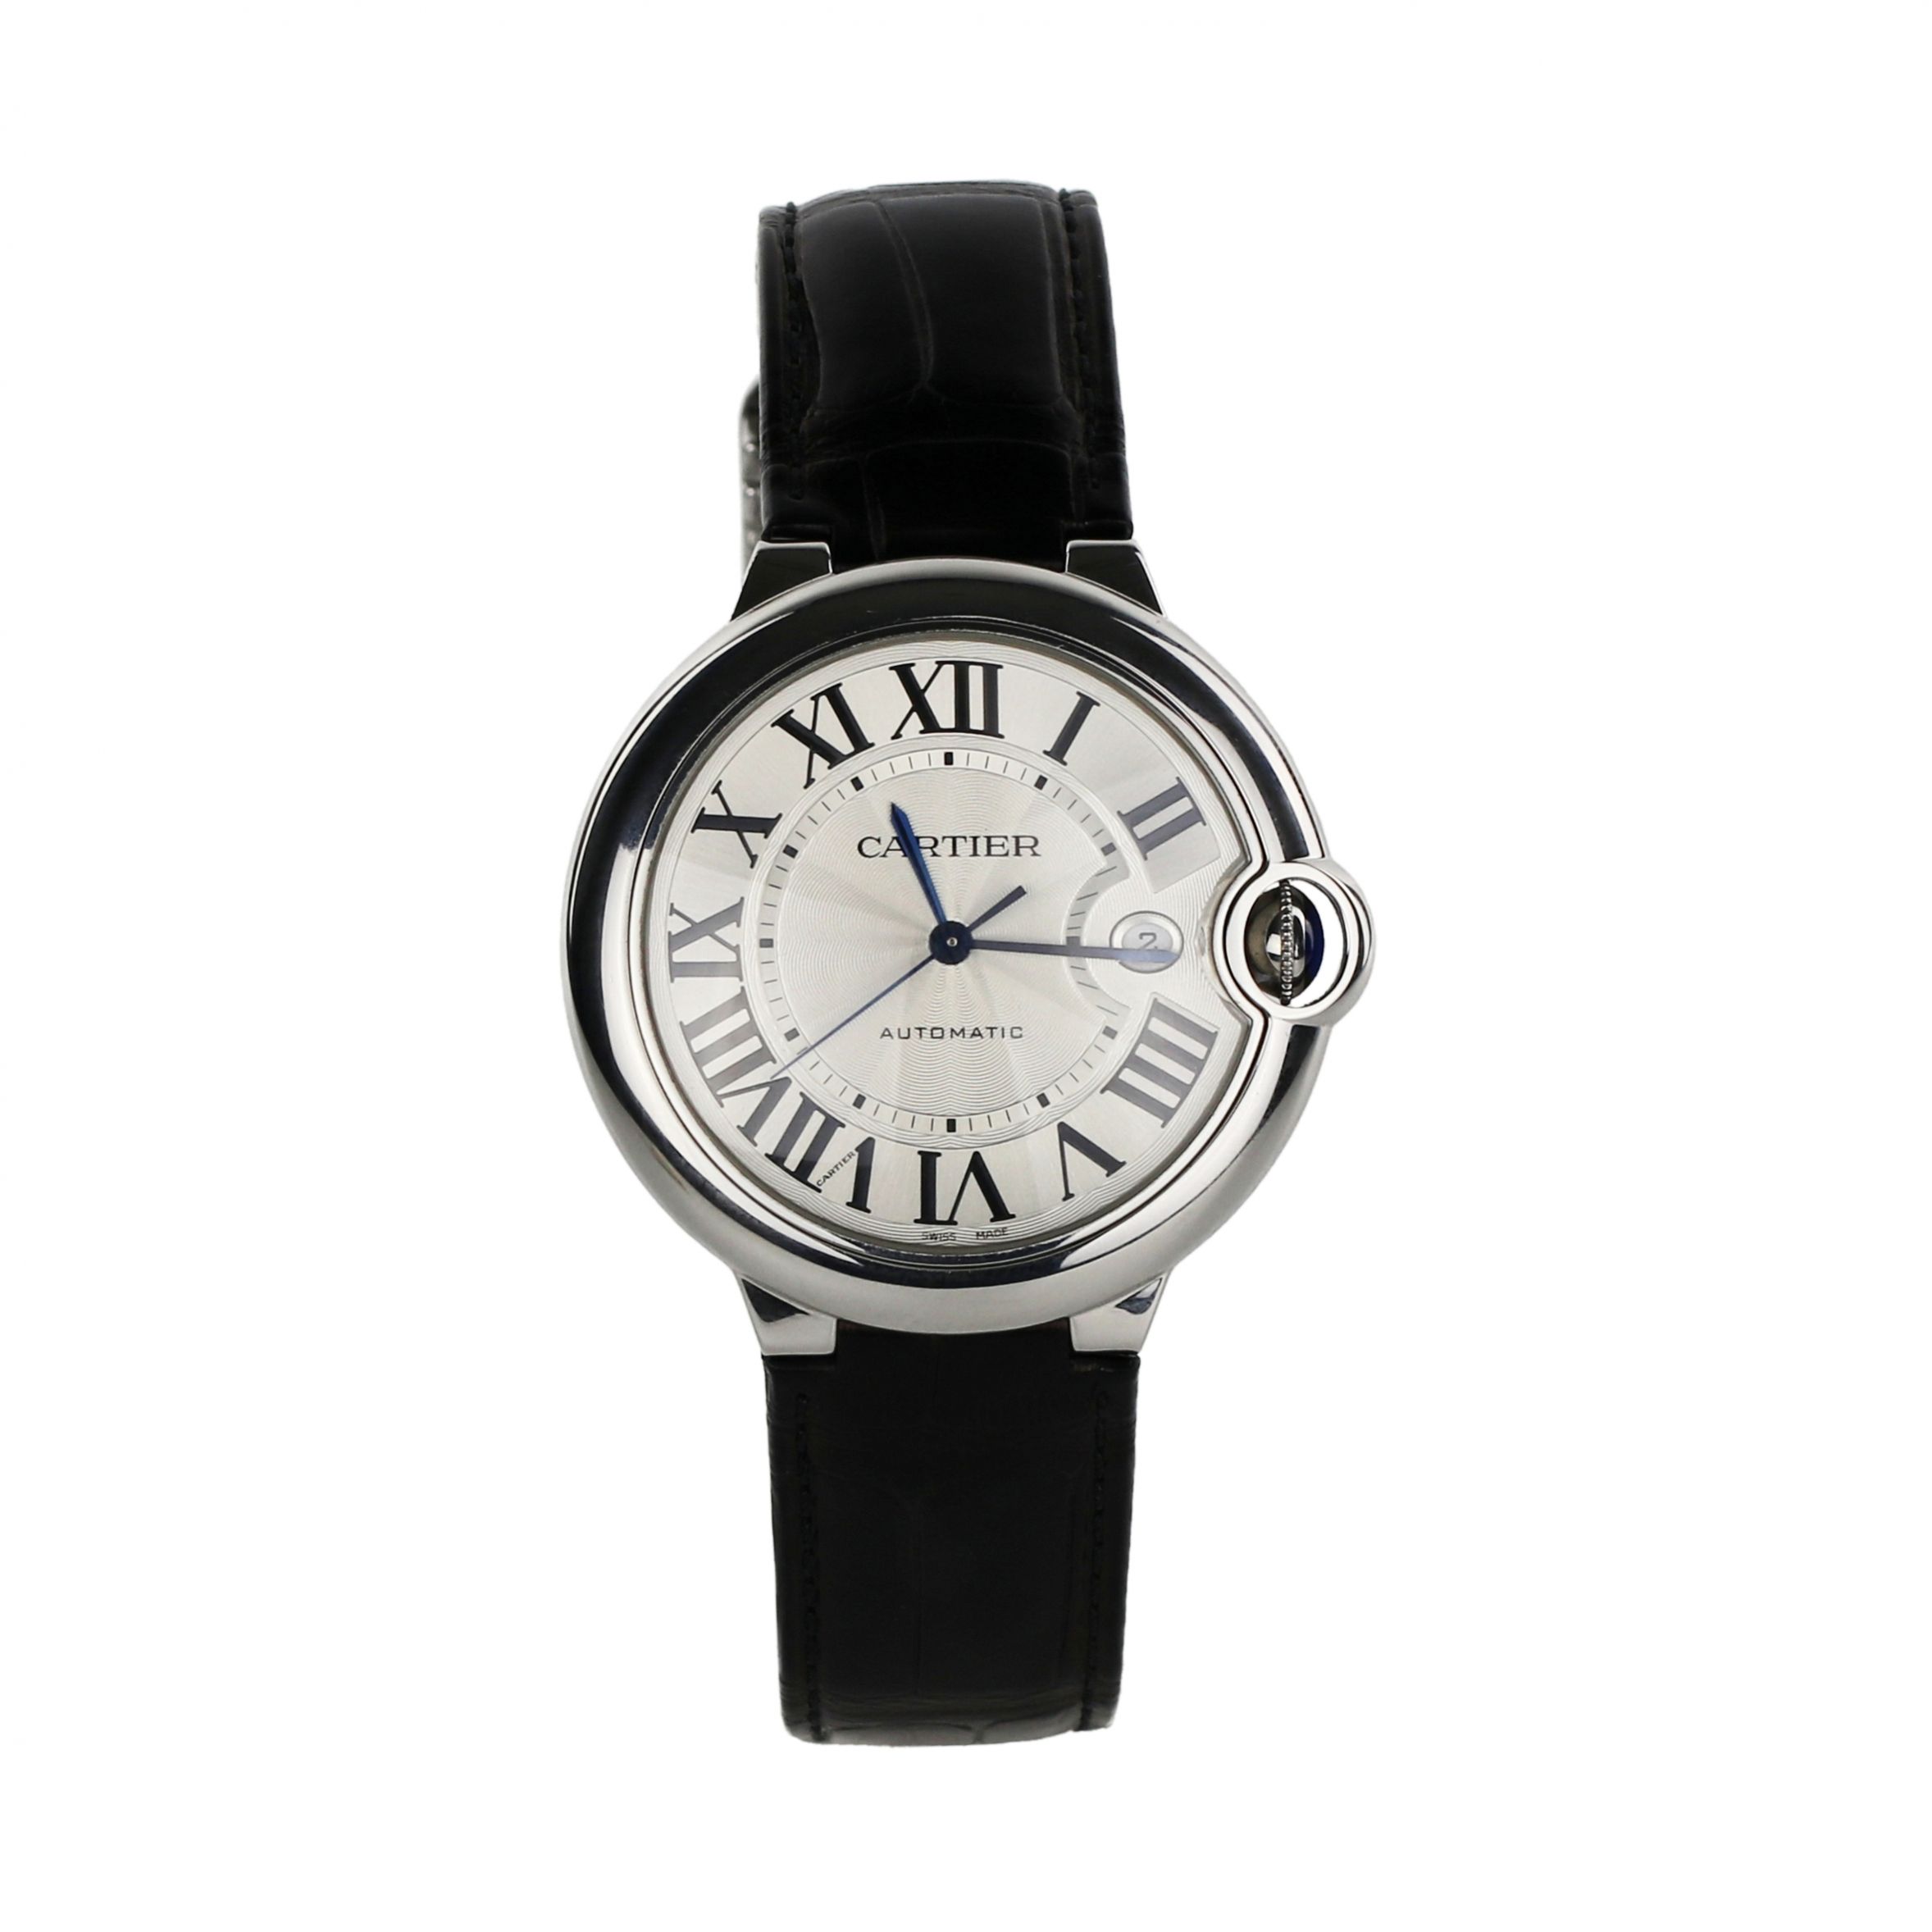 Cartier-Ballon-Bleu-de-Cartier-watch-Steel-case-42-mm-